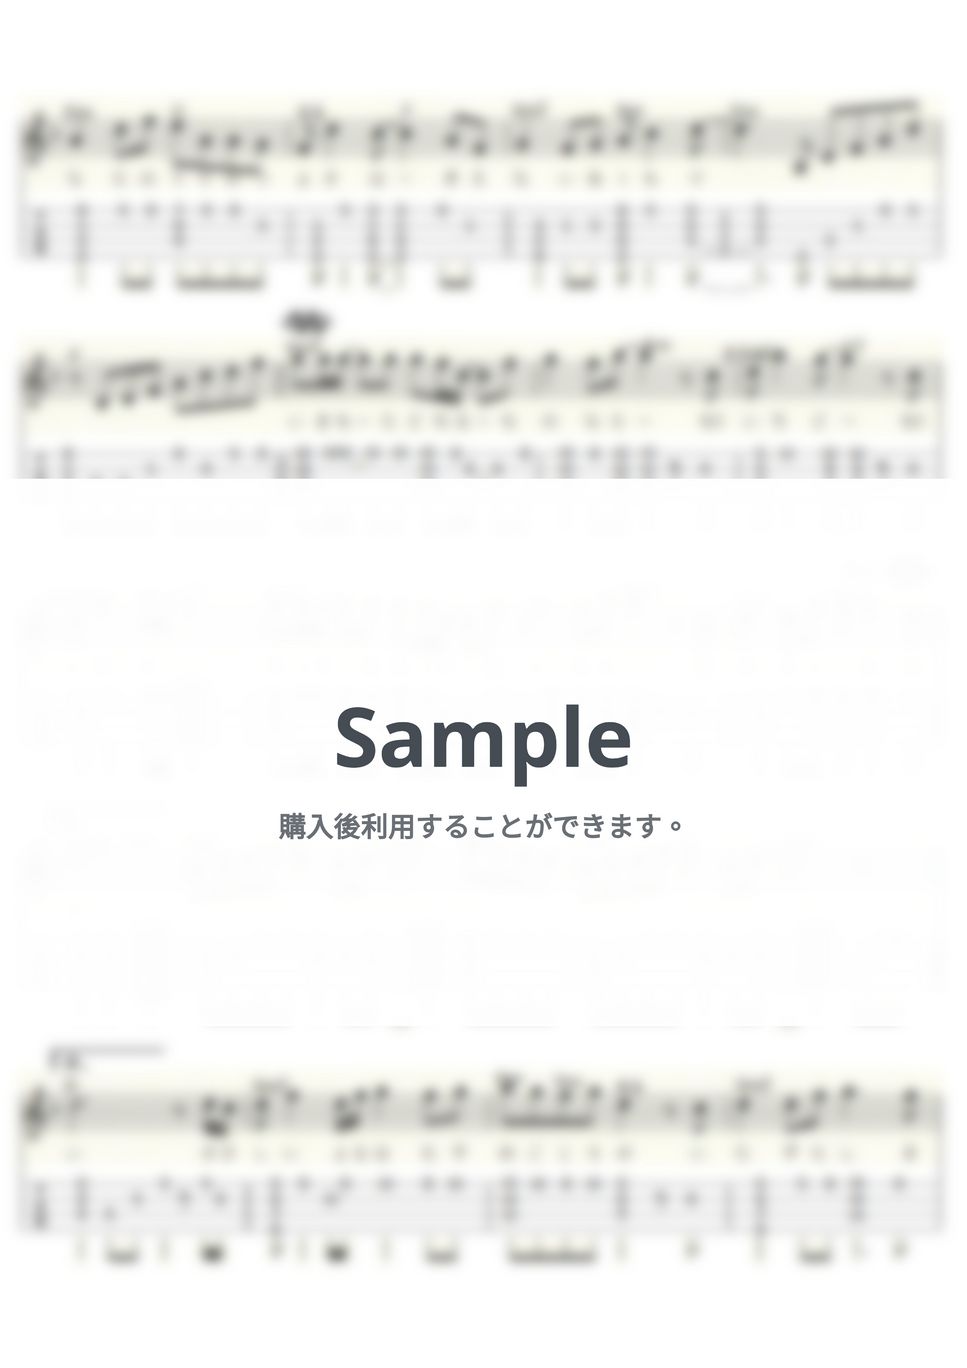 ちあき なおみ - 伝わりますか (ｳｸﾚﾚｿﾛ/Low-G/中級) by ukulelepapa